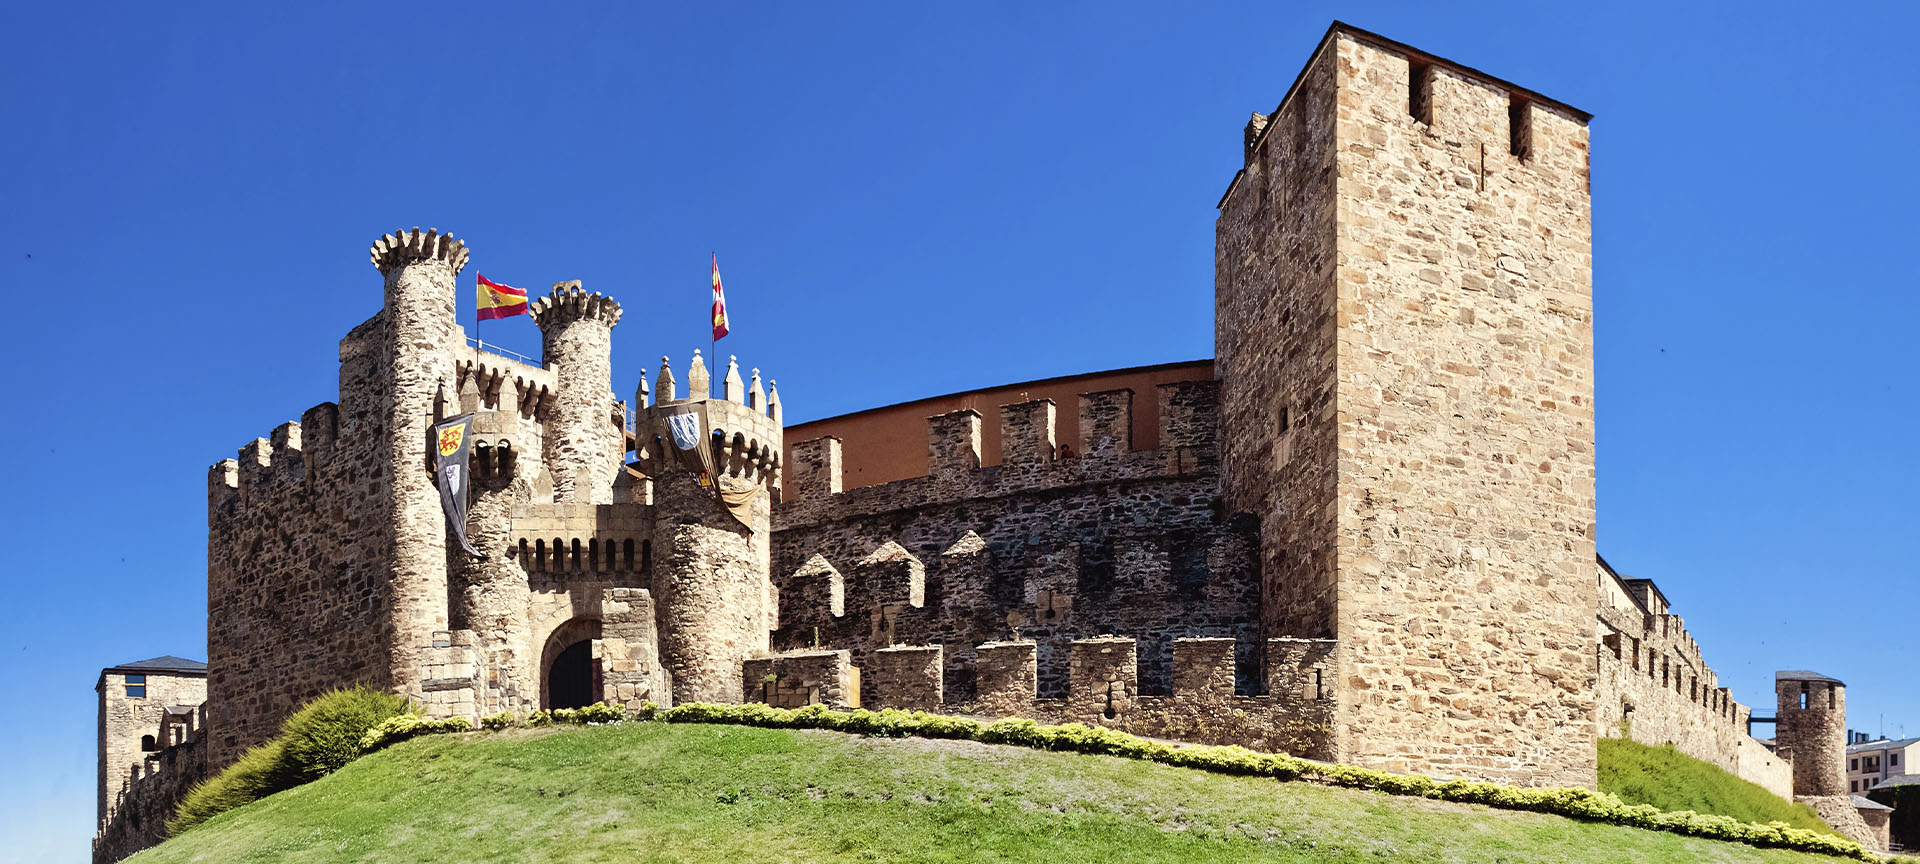 Château des Templiers à Ponferrada | spain.info en français